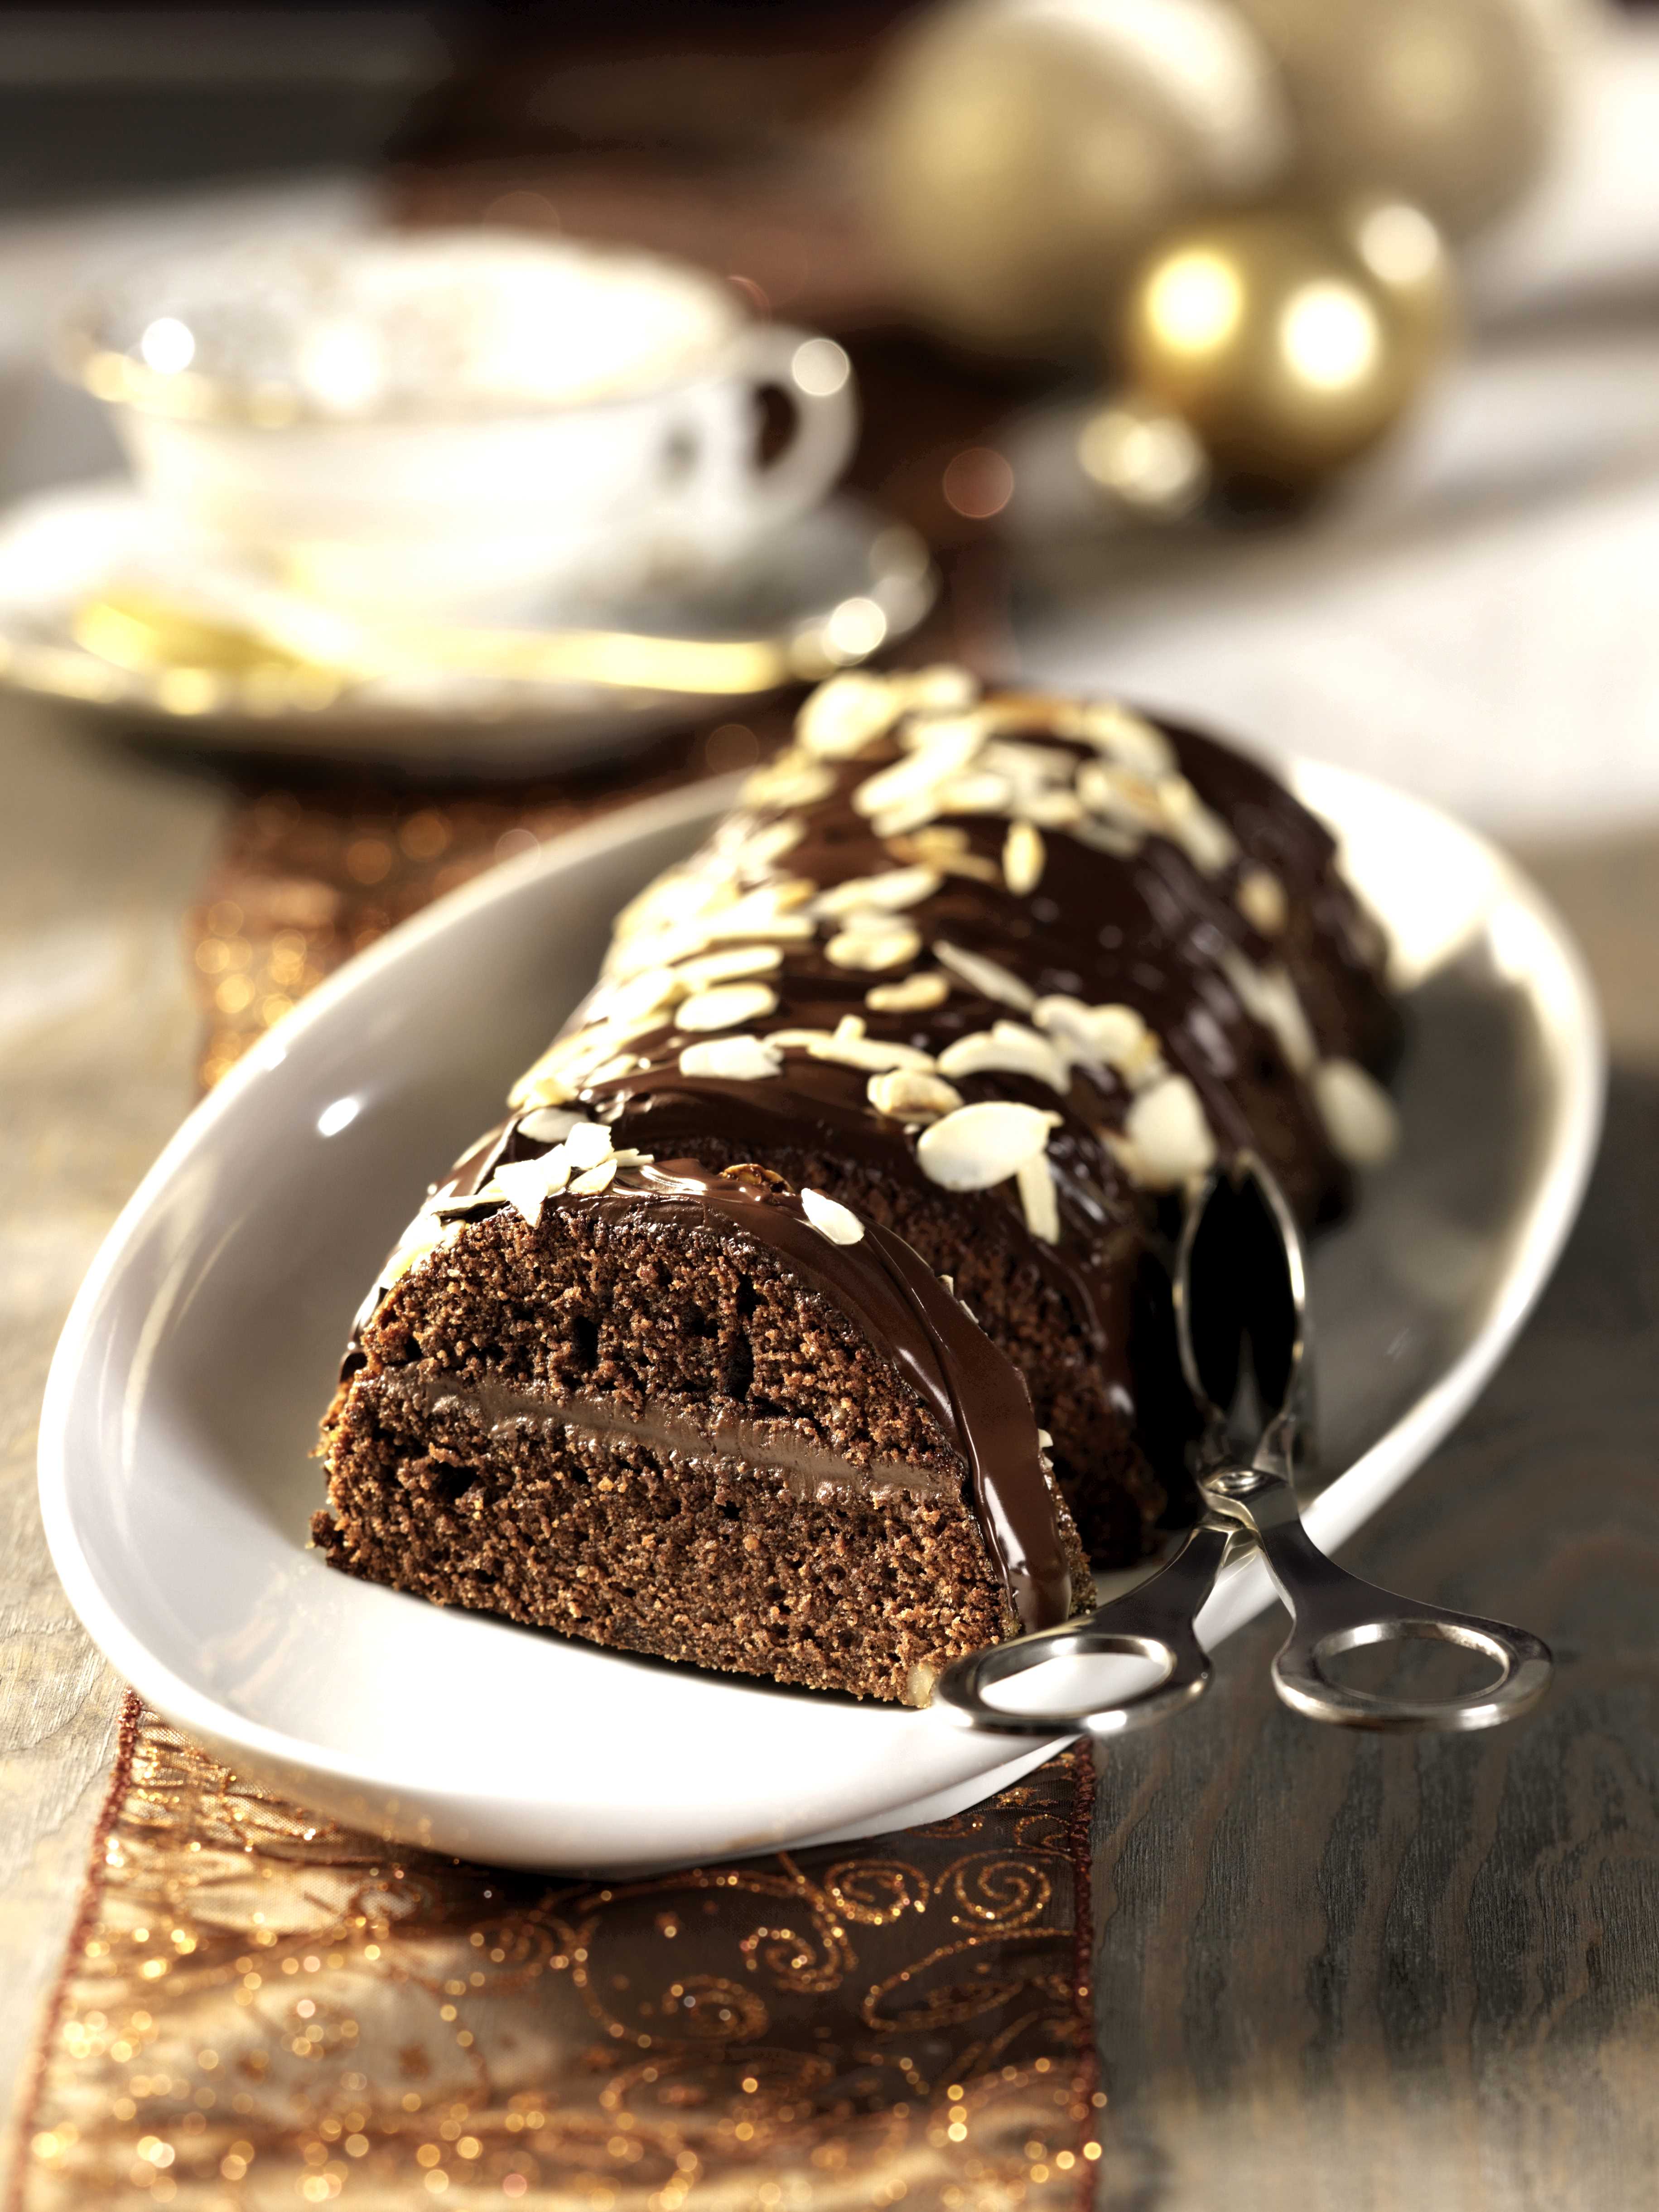 Dolci Di Natale Con Bimby.Ricetta Torta Di Noci Con Ripieno Al Cioccolato Con Il Bimby Agrodolce